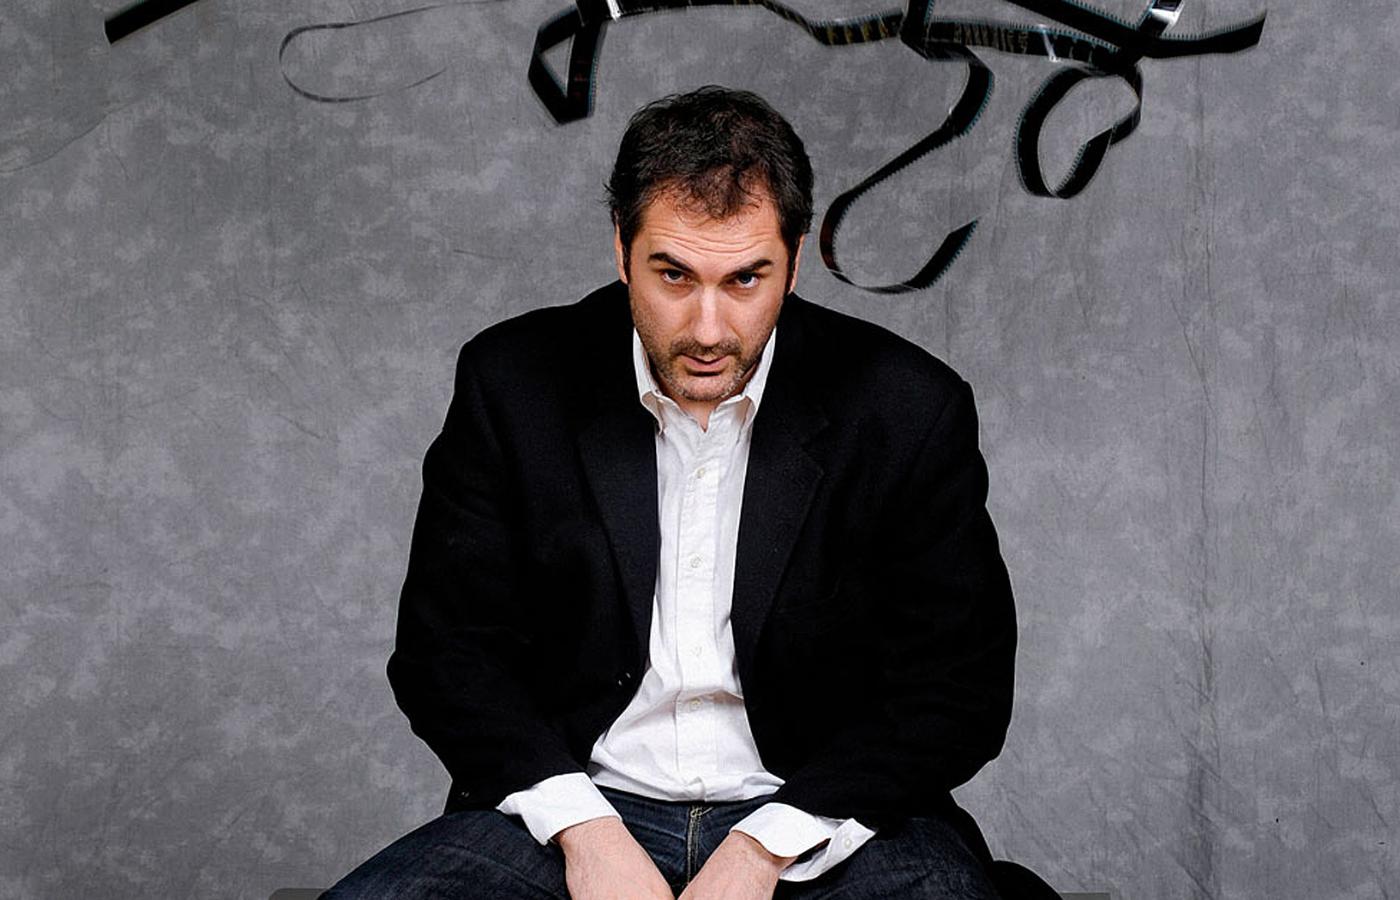 Xavier Giannoli (ur. 1972 r.) – jeden z najciekawszych europejskich reżyserów.